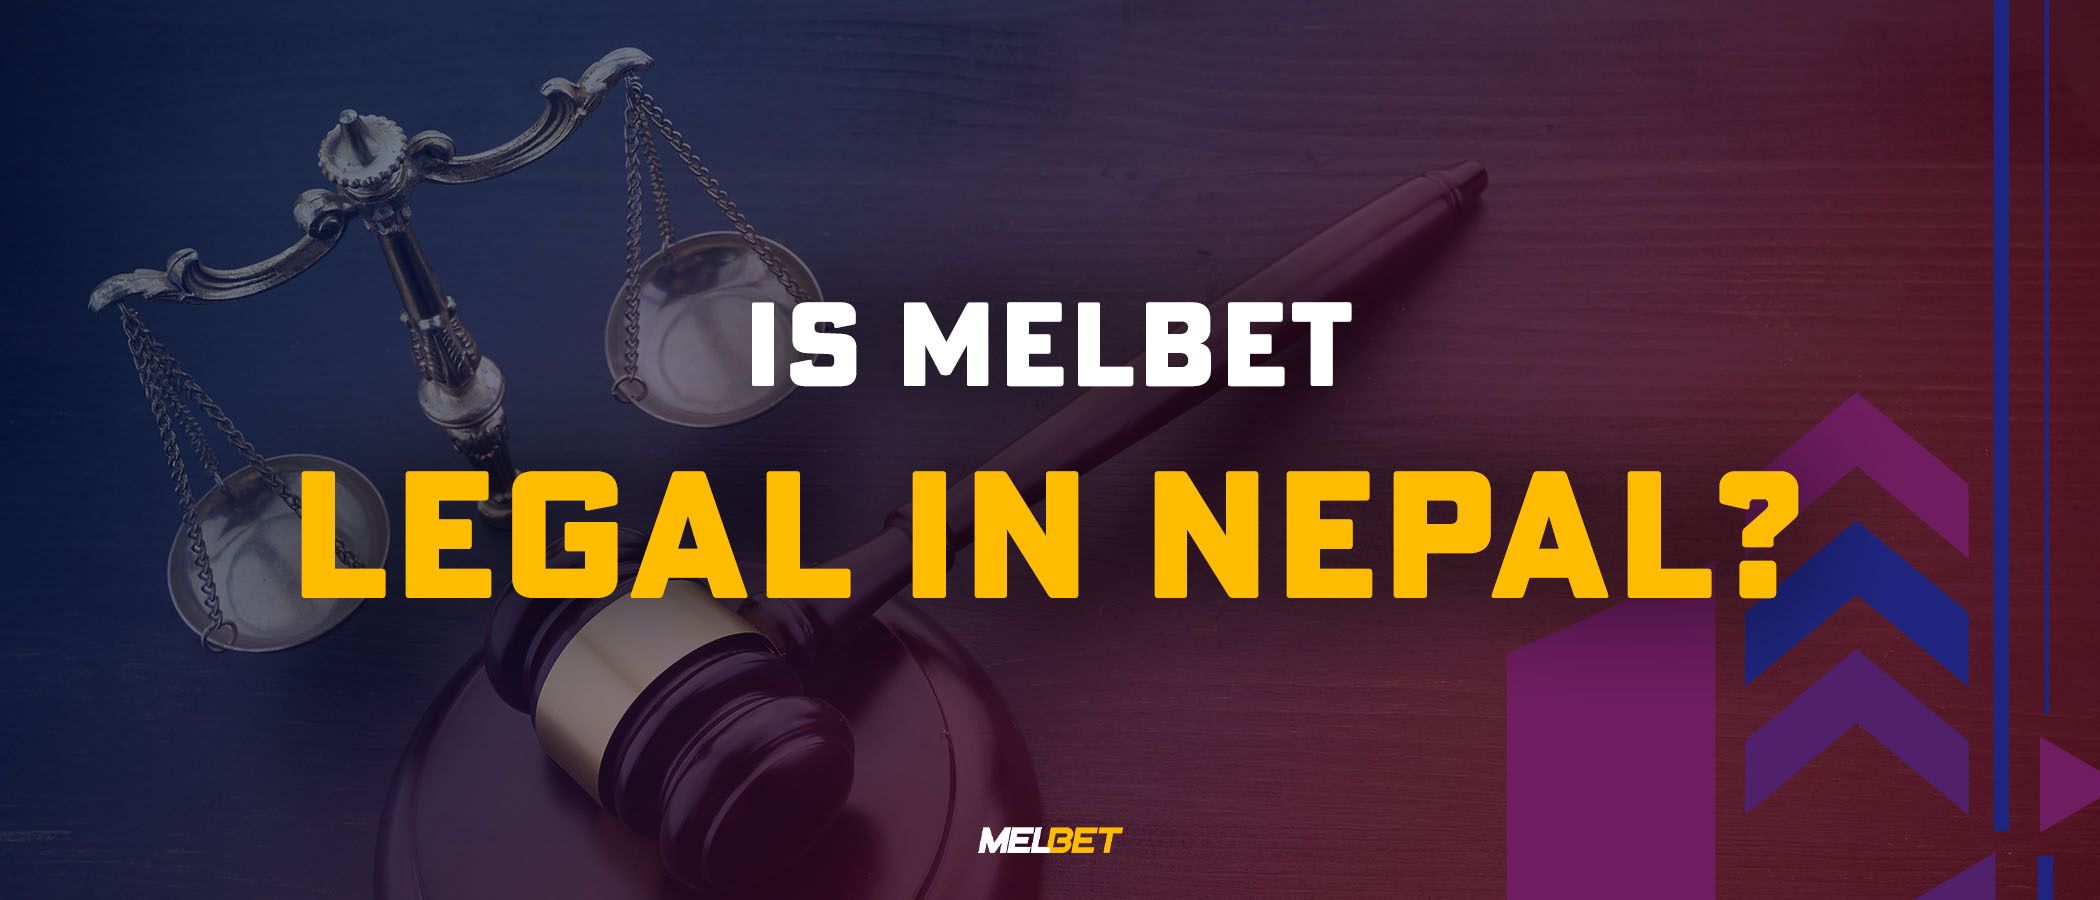 Is Melbet Legal in Nepal